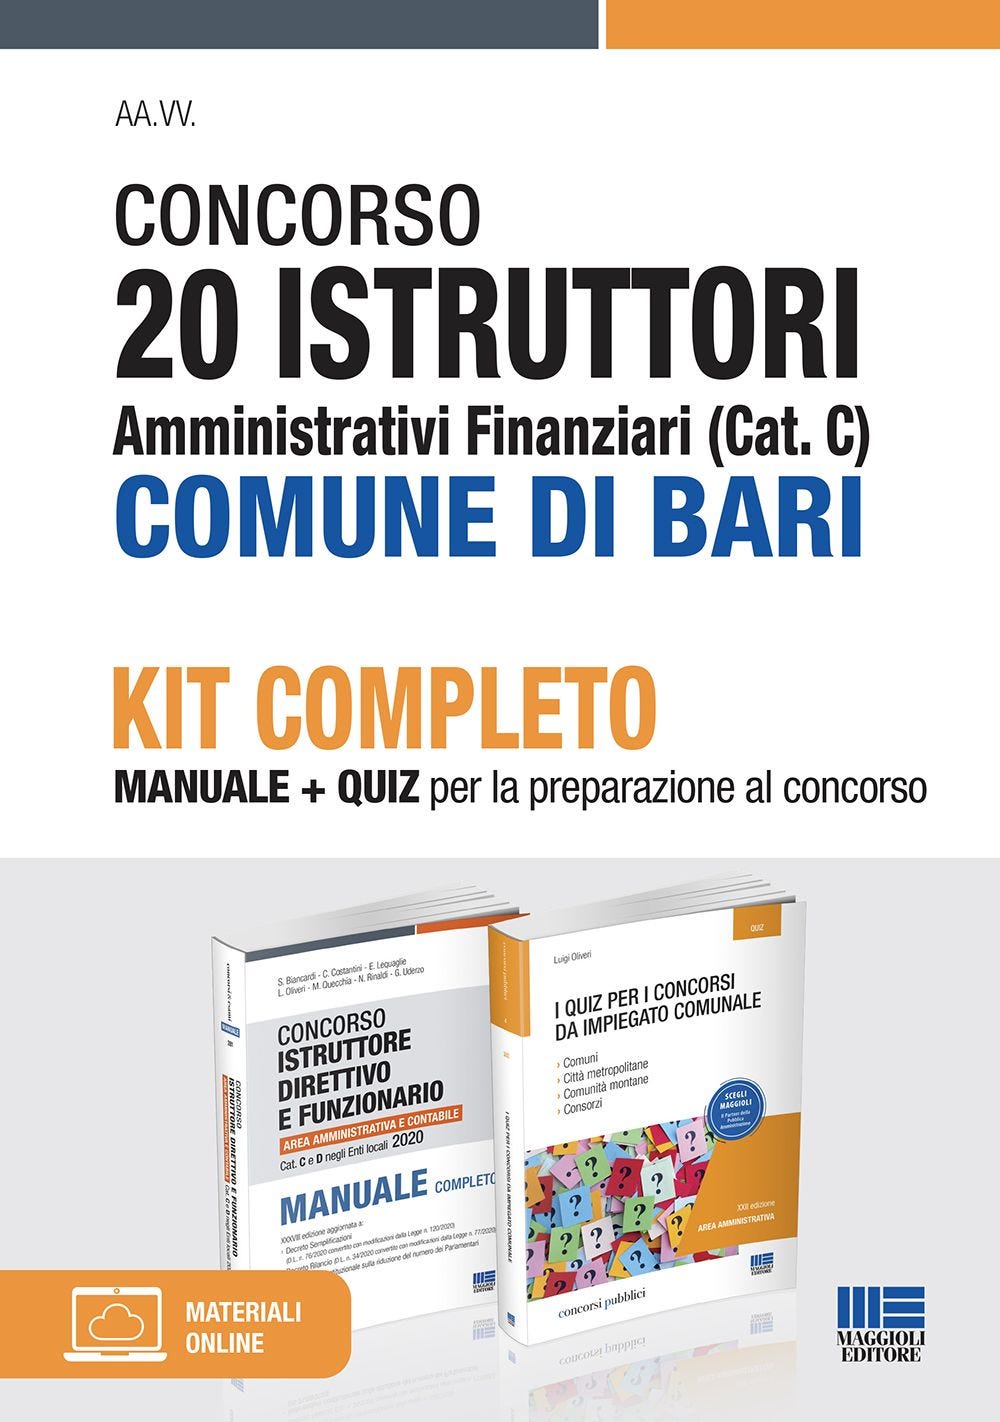 Concorso 20 Istruttori amministrativi finanziari (Cat. C) Comune di Bari - Kit completo